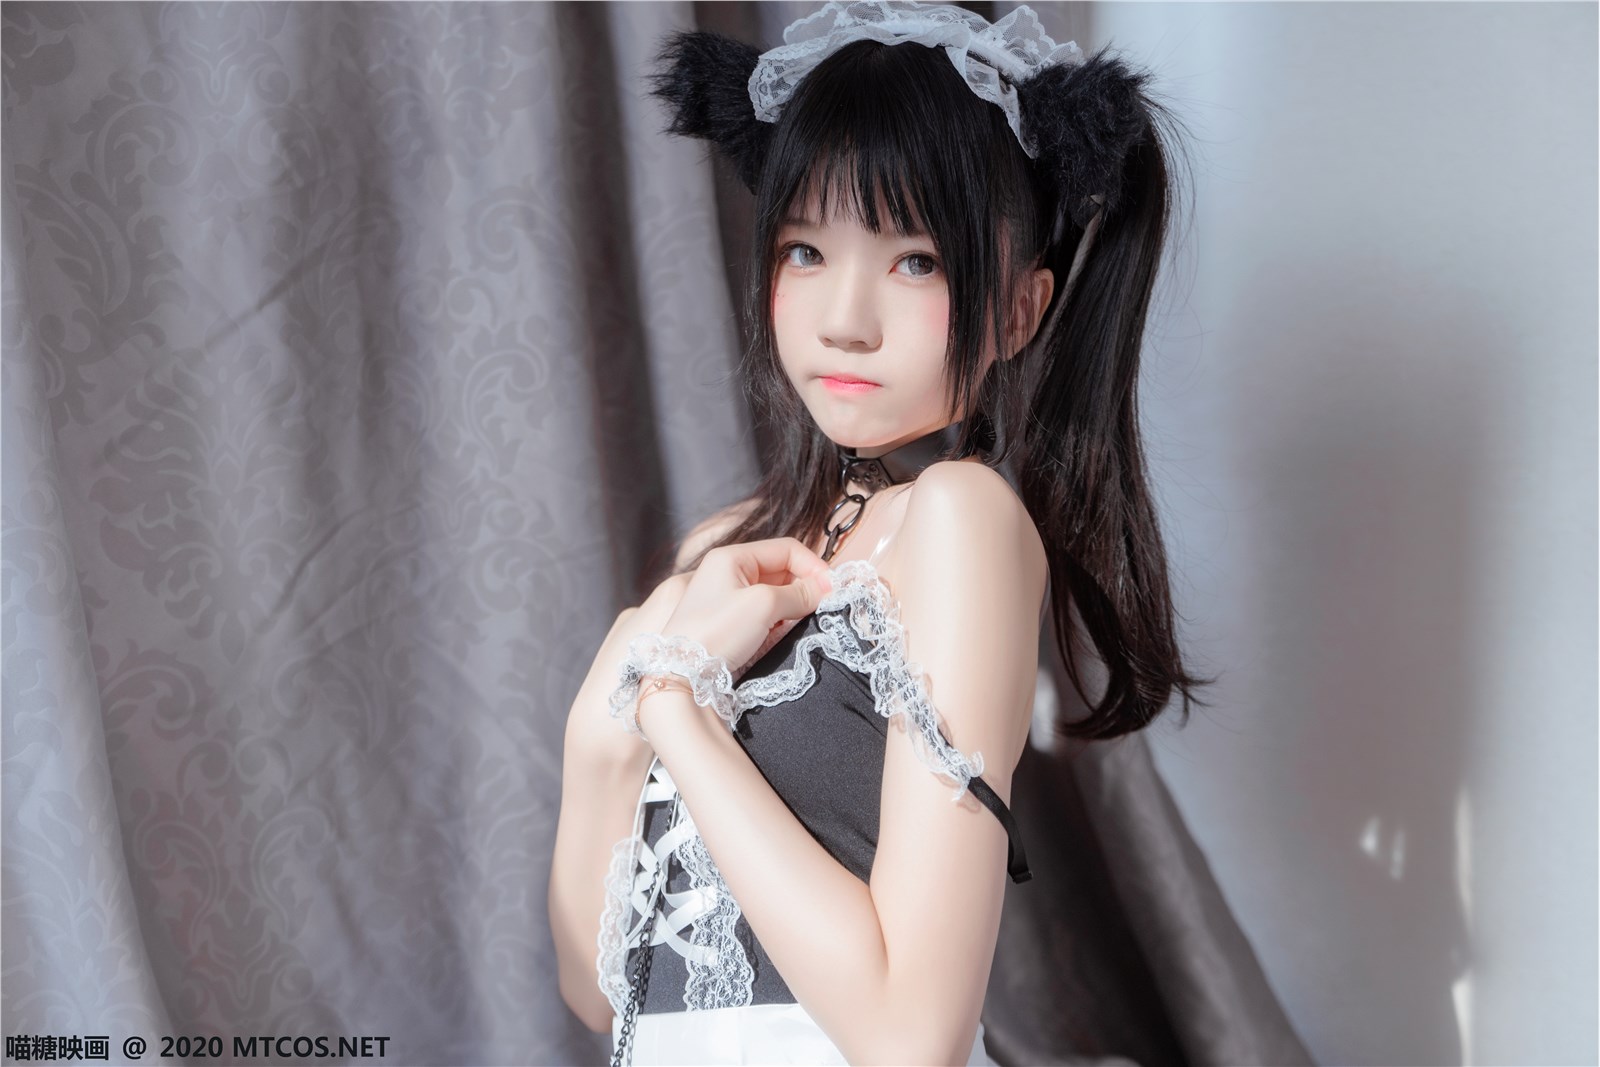 The black cat maid(8)